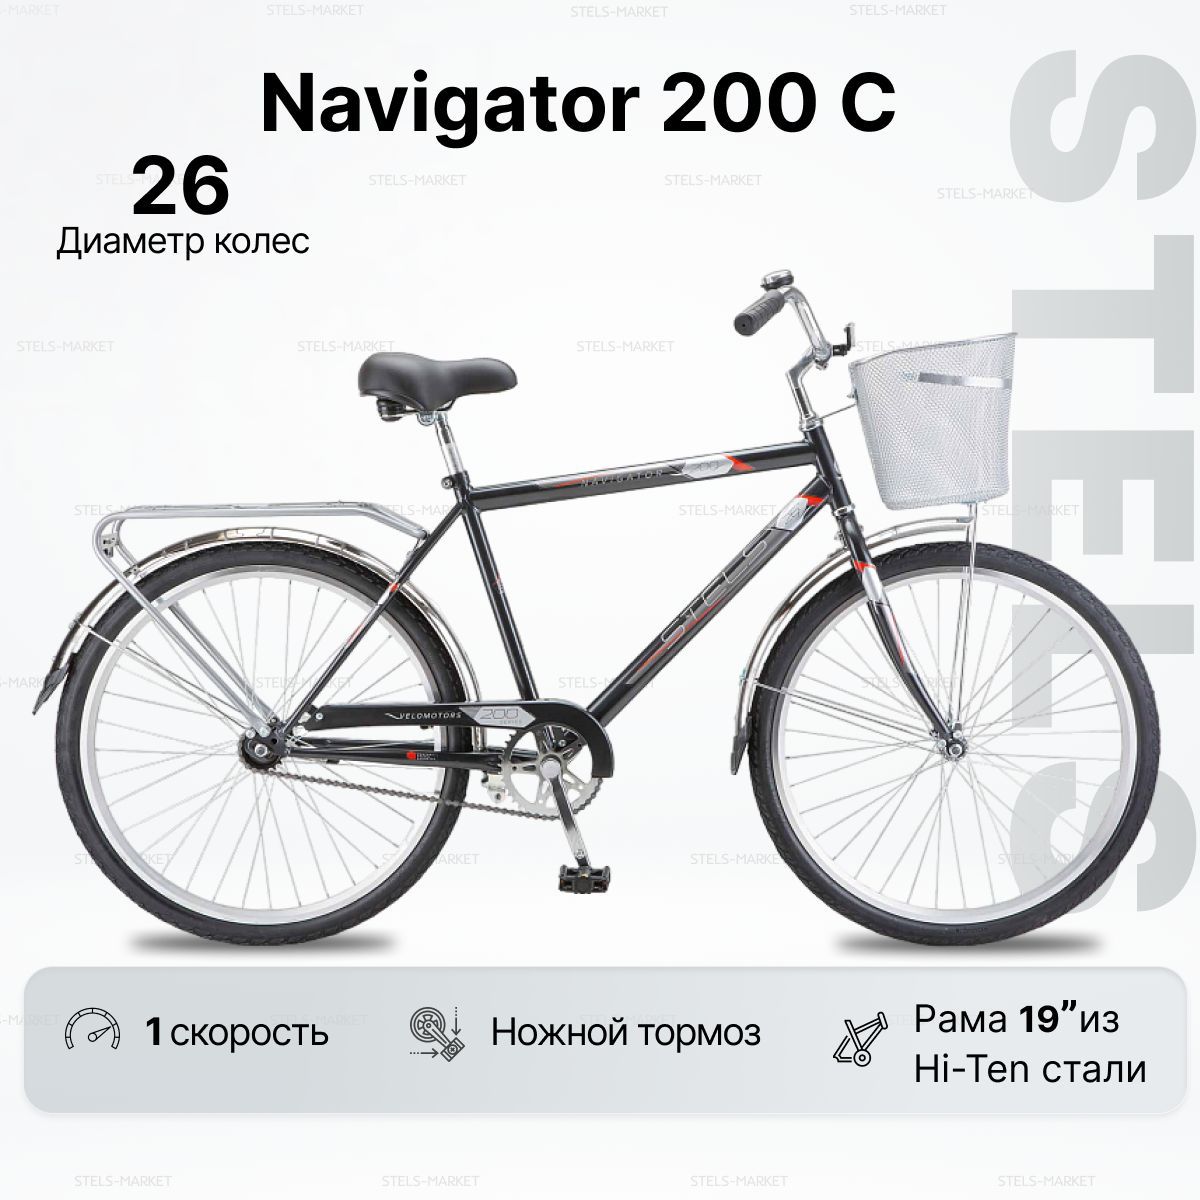 ГородскойВелосипедколесо26"NAVIGATOR200Cрама19",26,2023